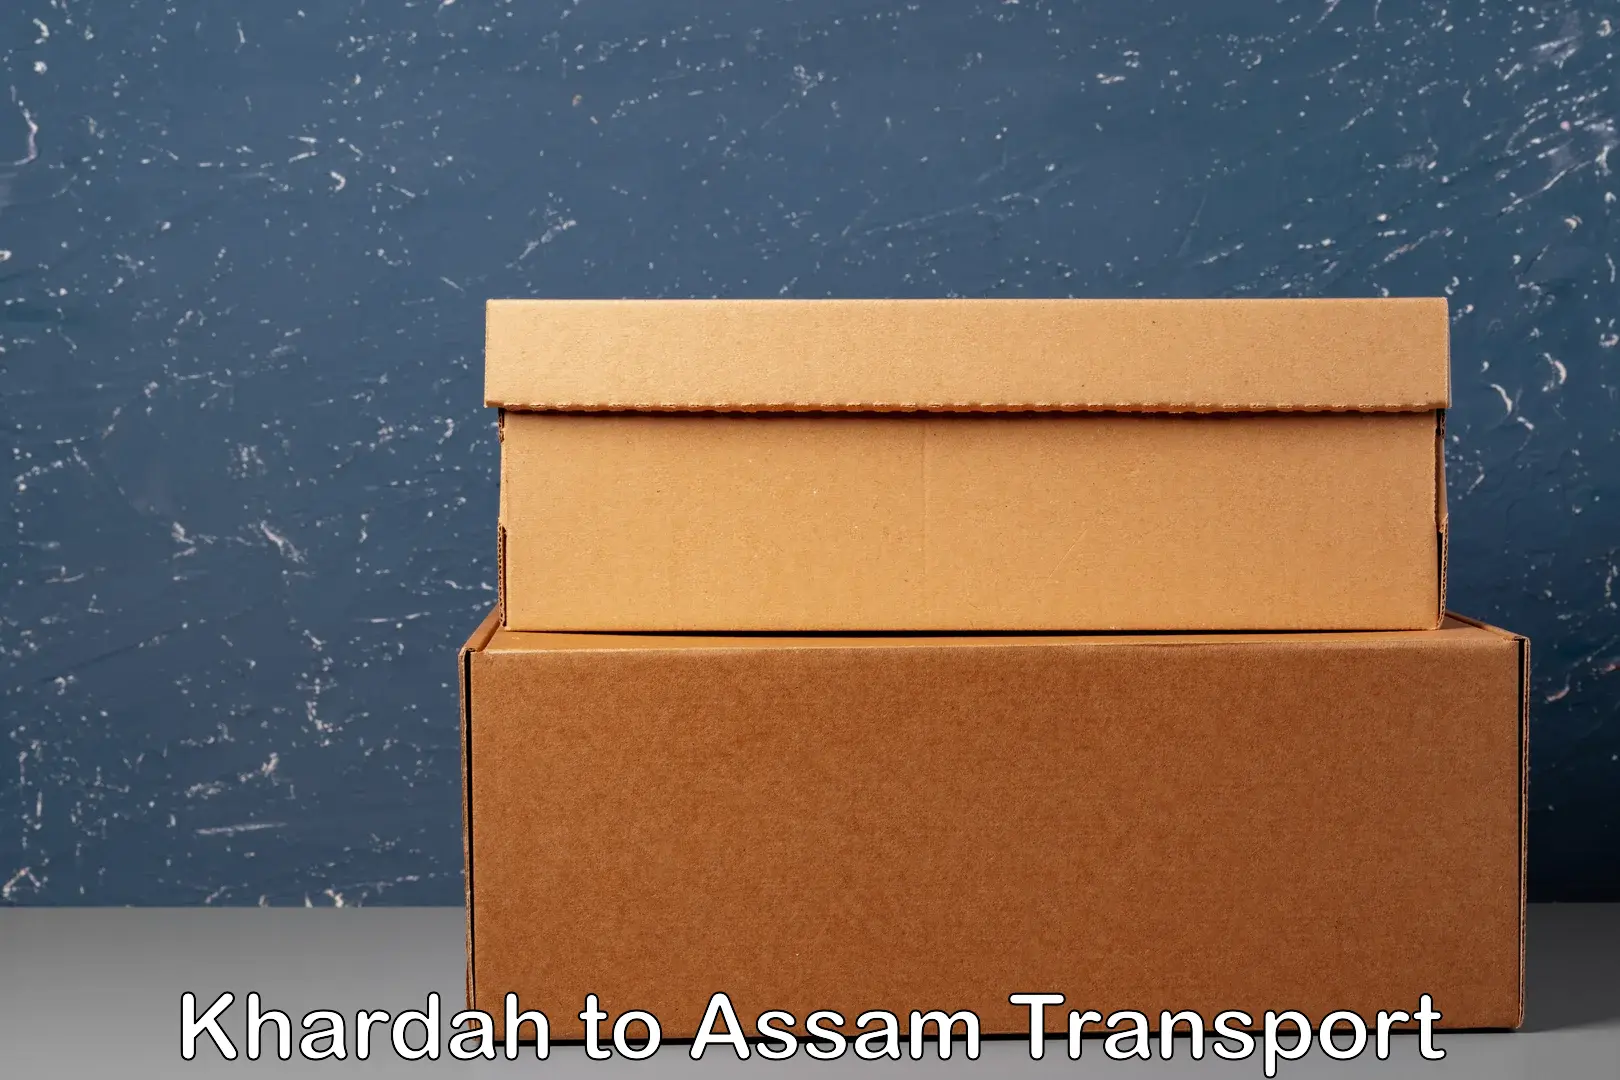 Air freight transport services Khardah to Assam